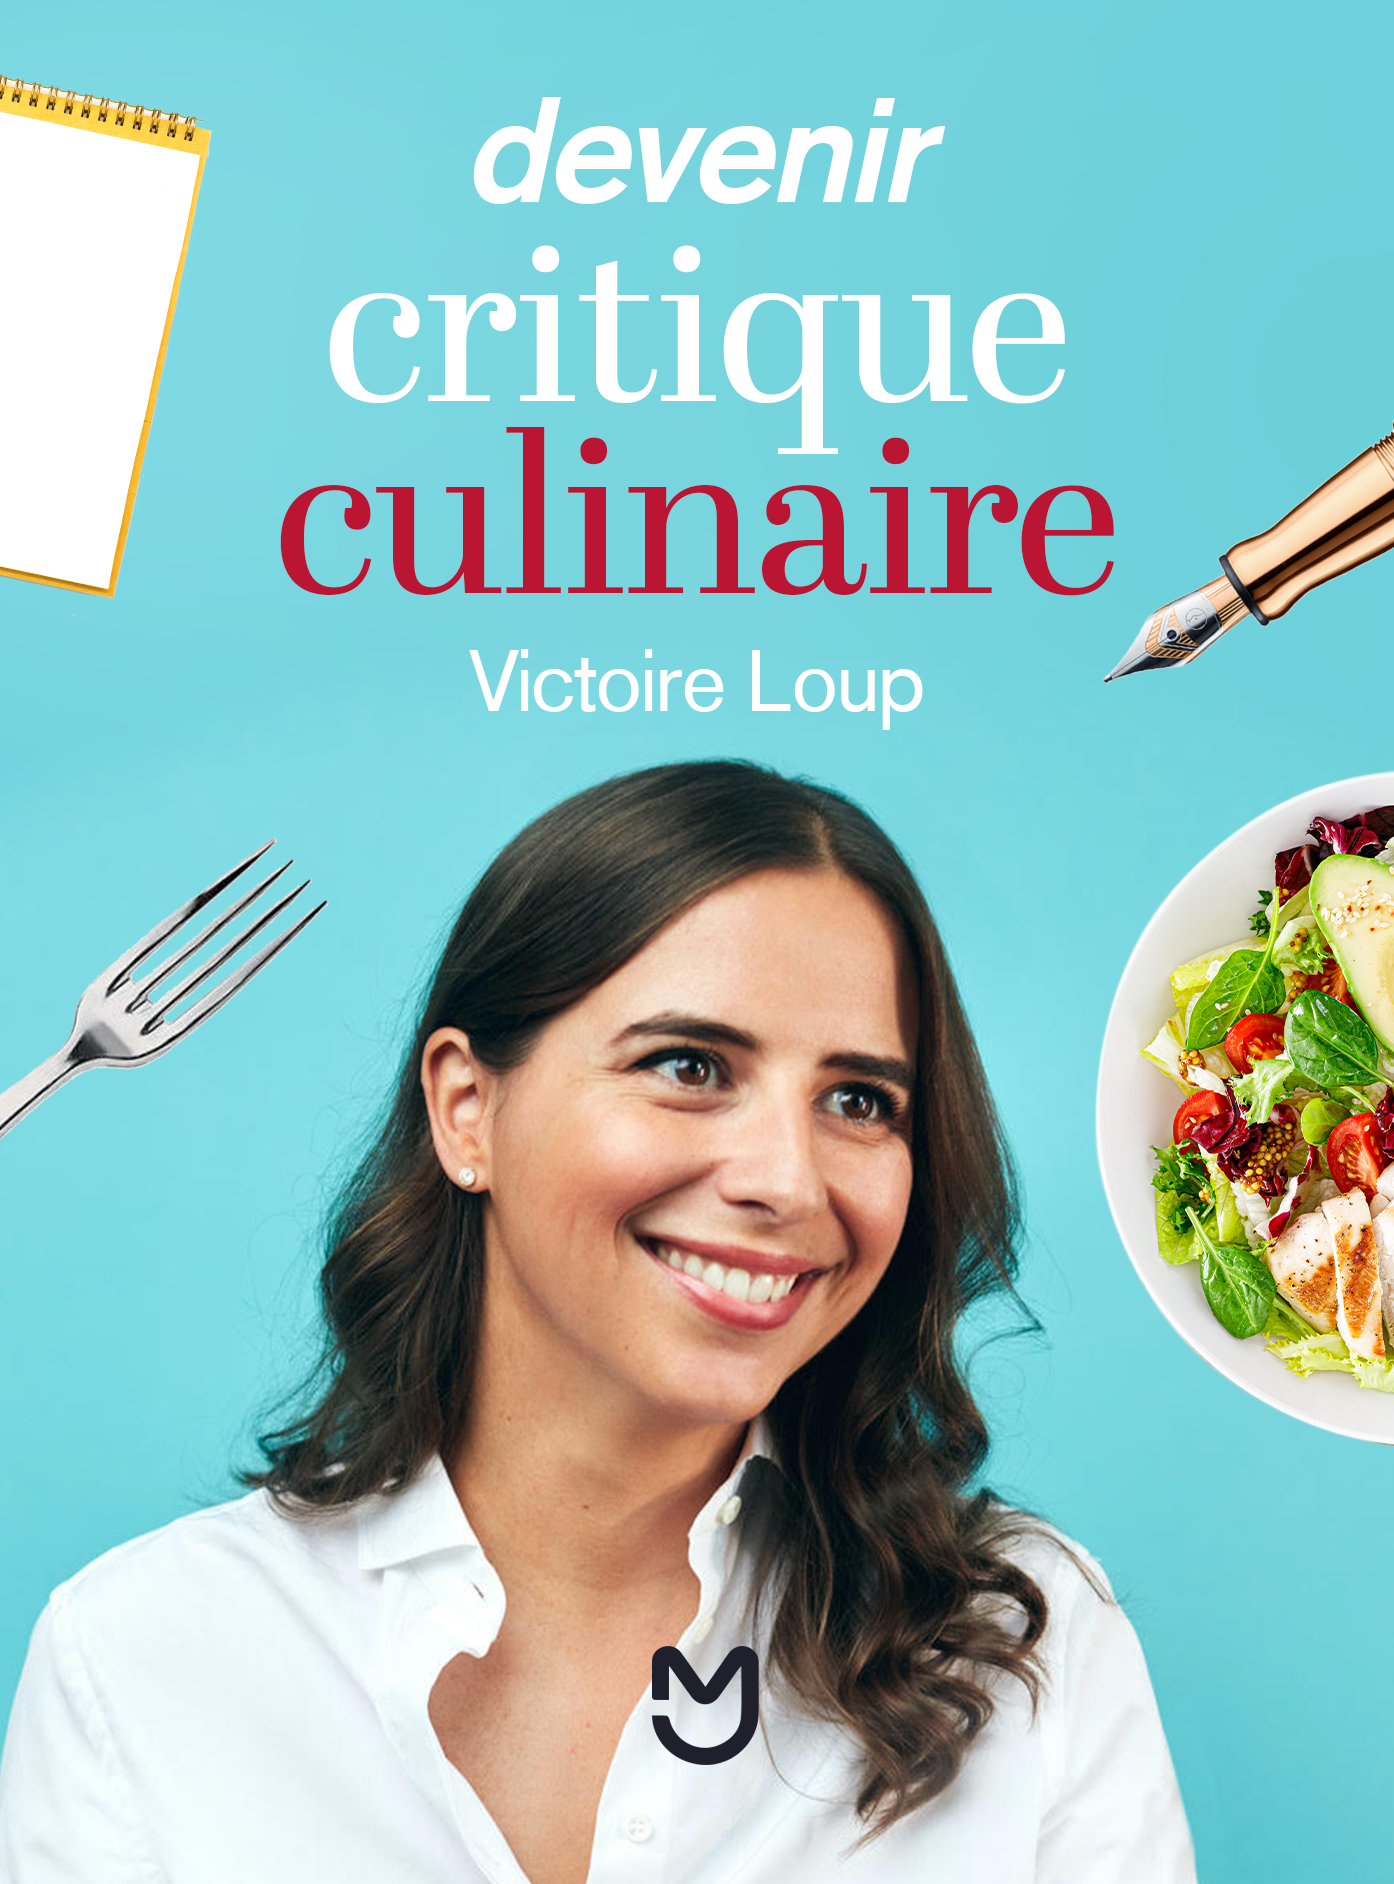 Devenir critique culinaire, Victoire Loup